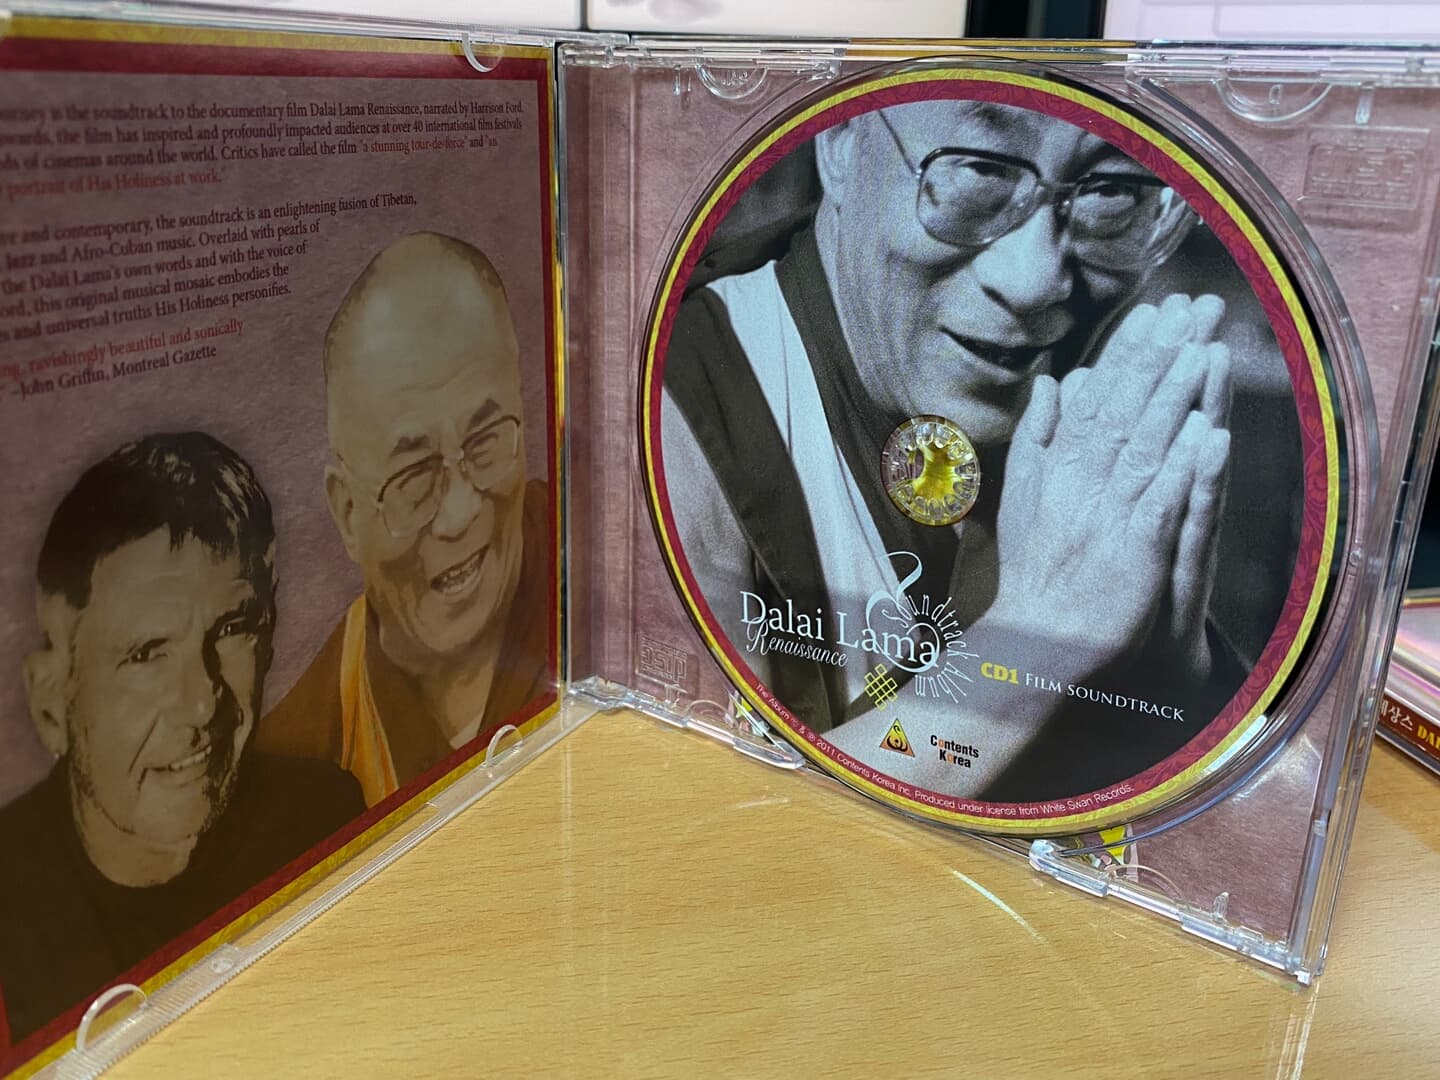 달라이 라마 르네상스 - Dalai Lama Renaissance OST 2Cds [1CD OST+1CD 명상음악]